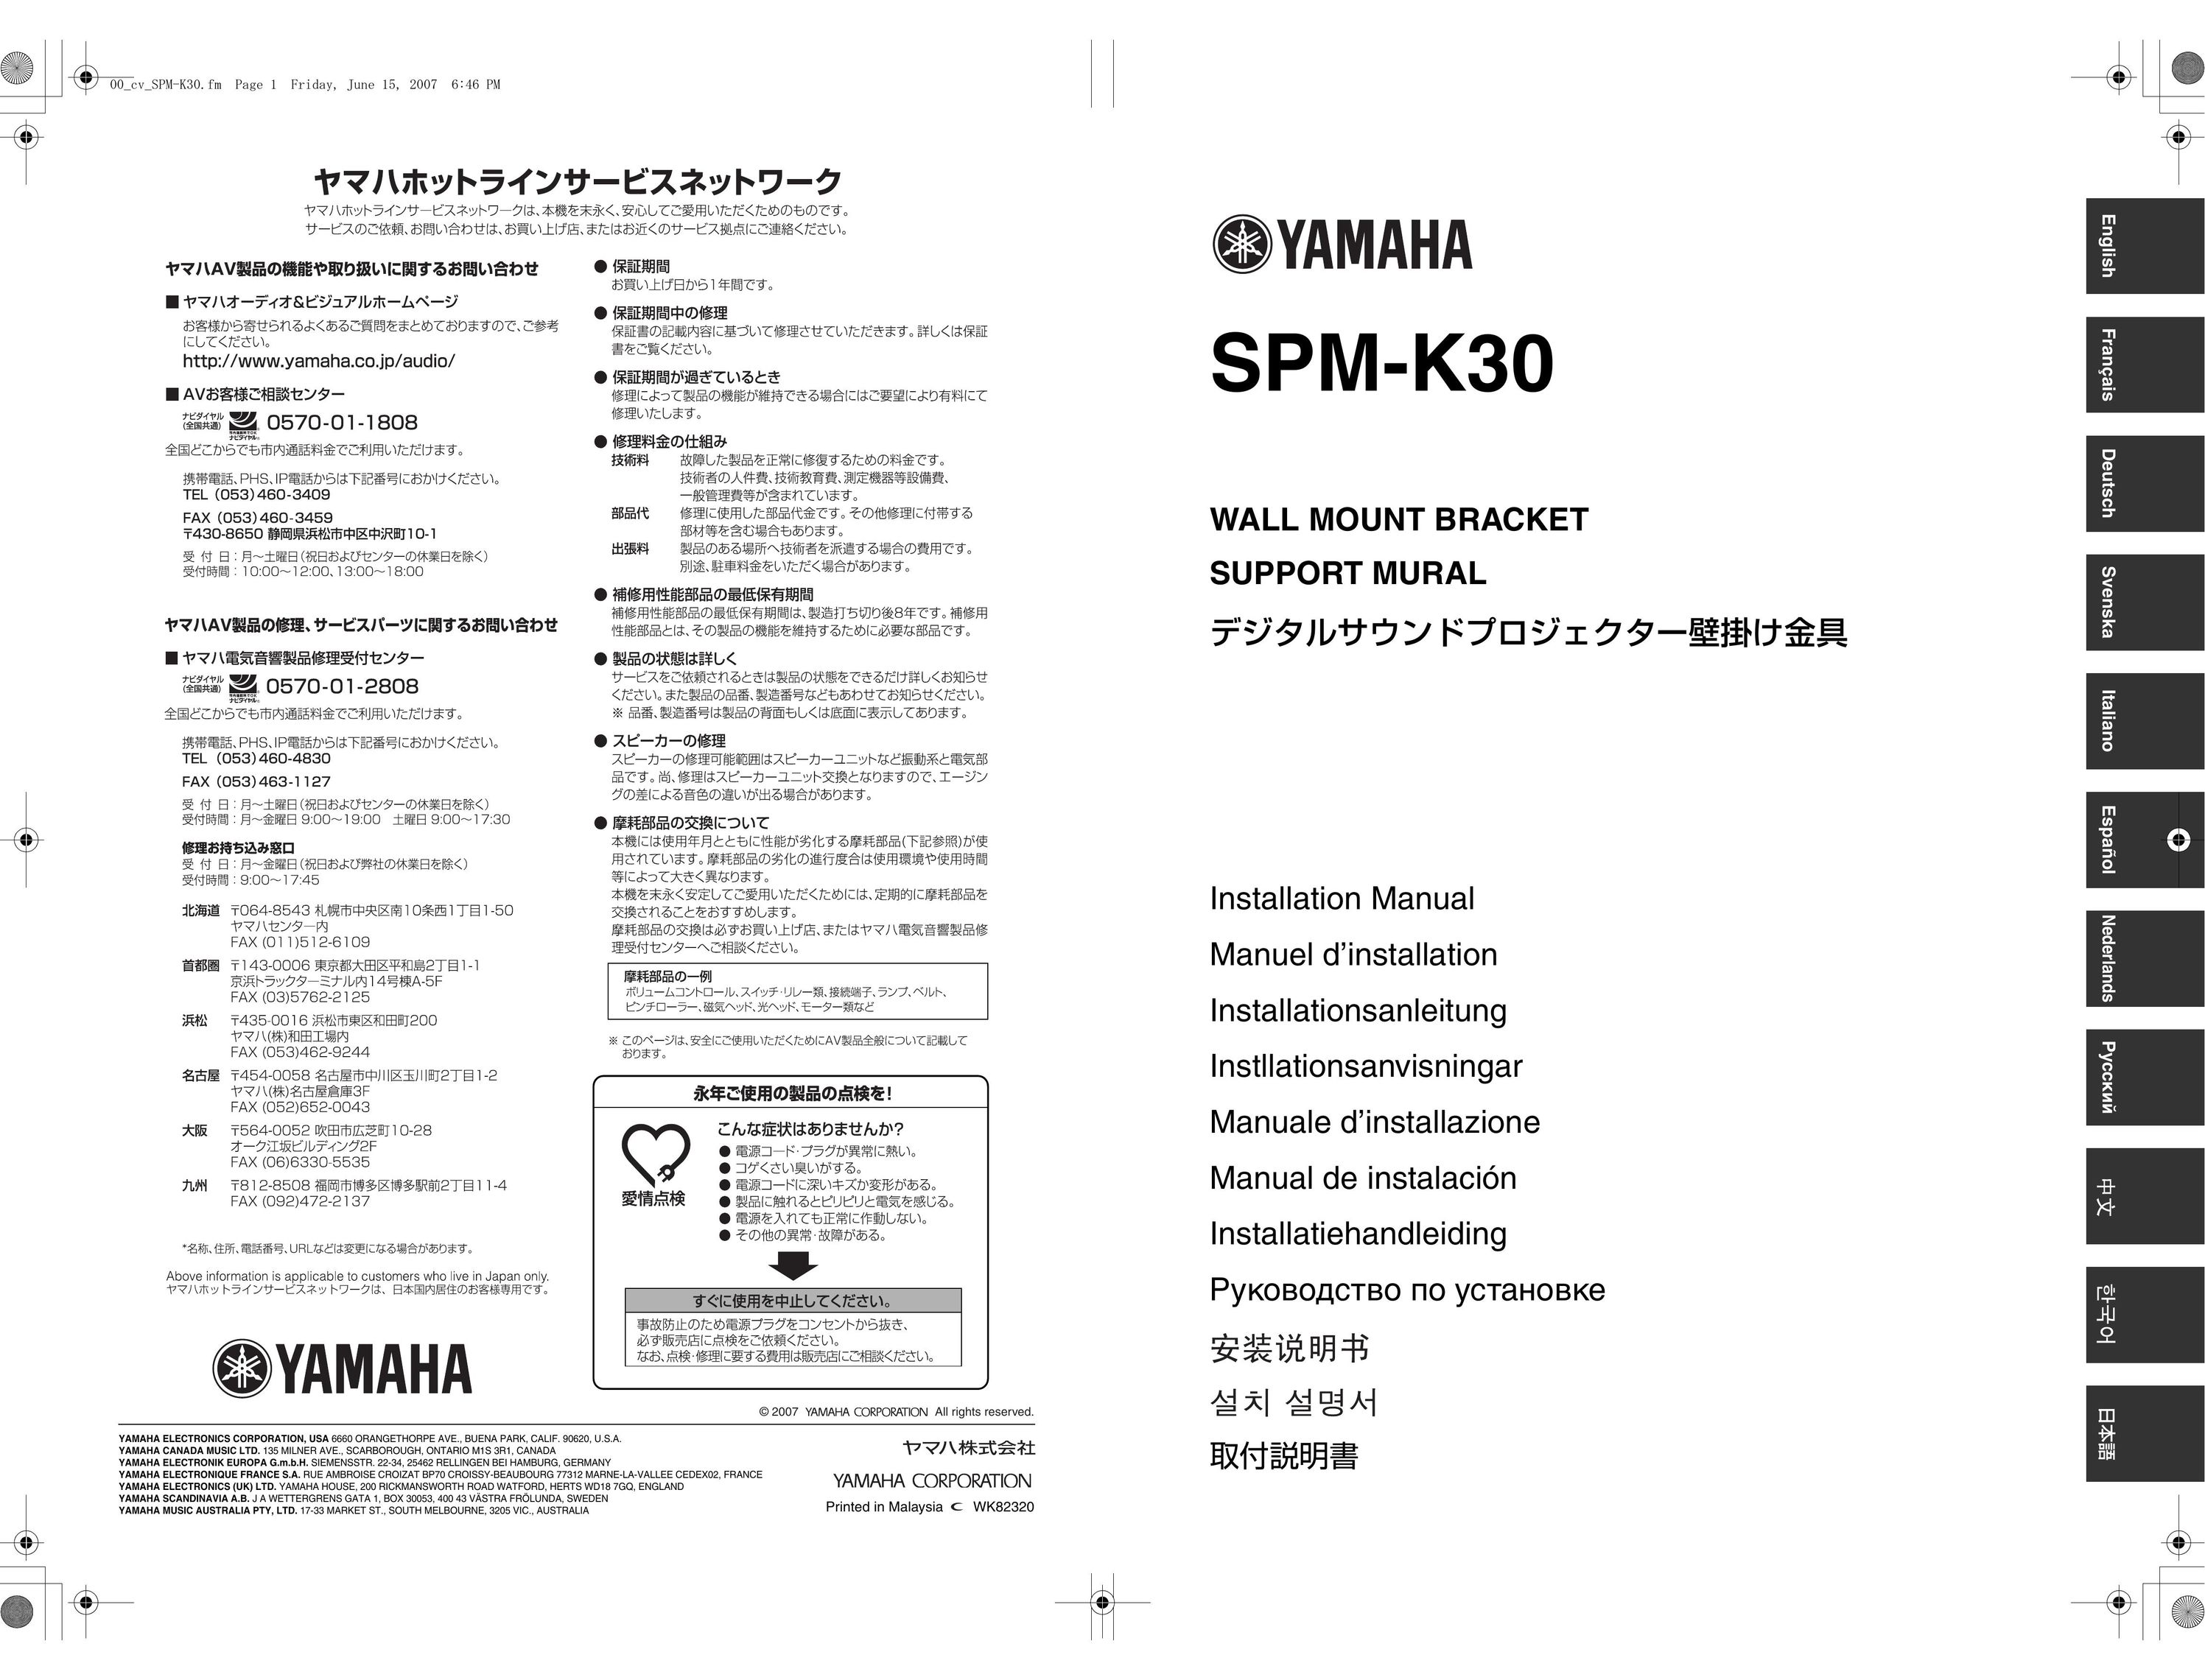 Yamaha SPMK30 Indoor Furnishings User Manual